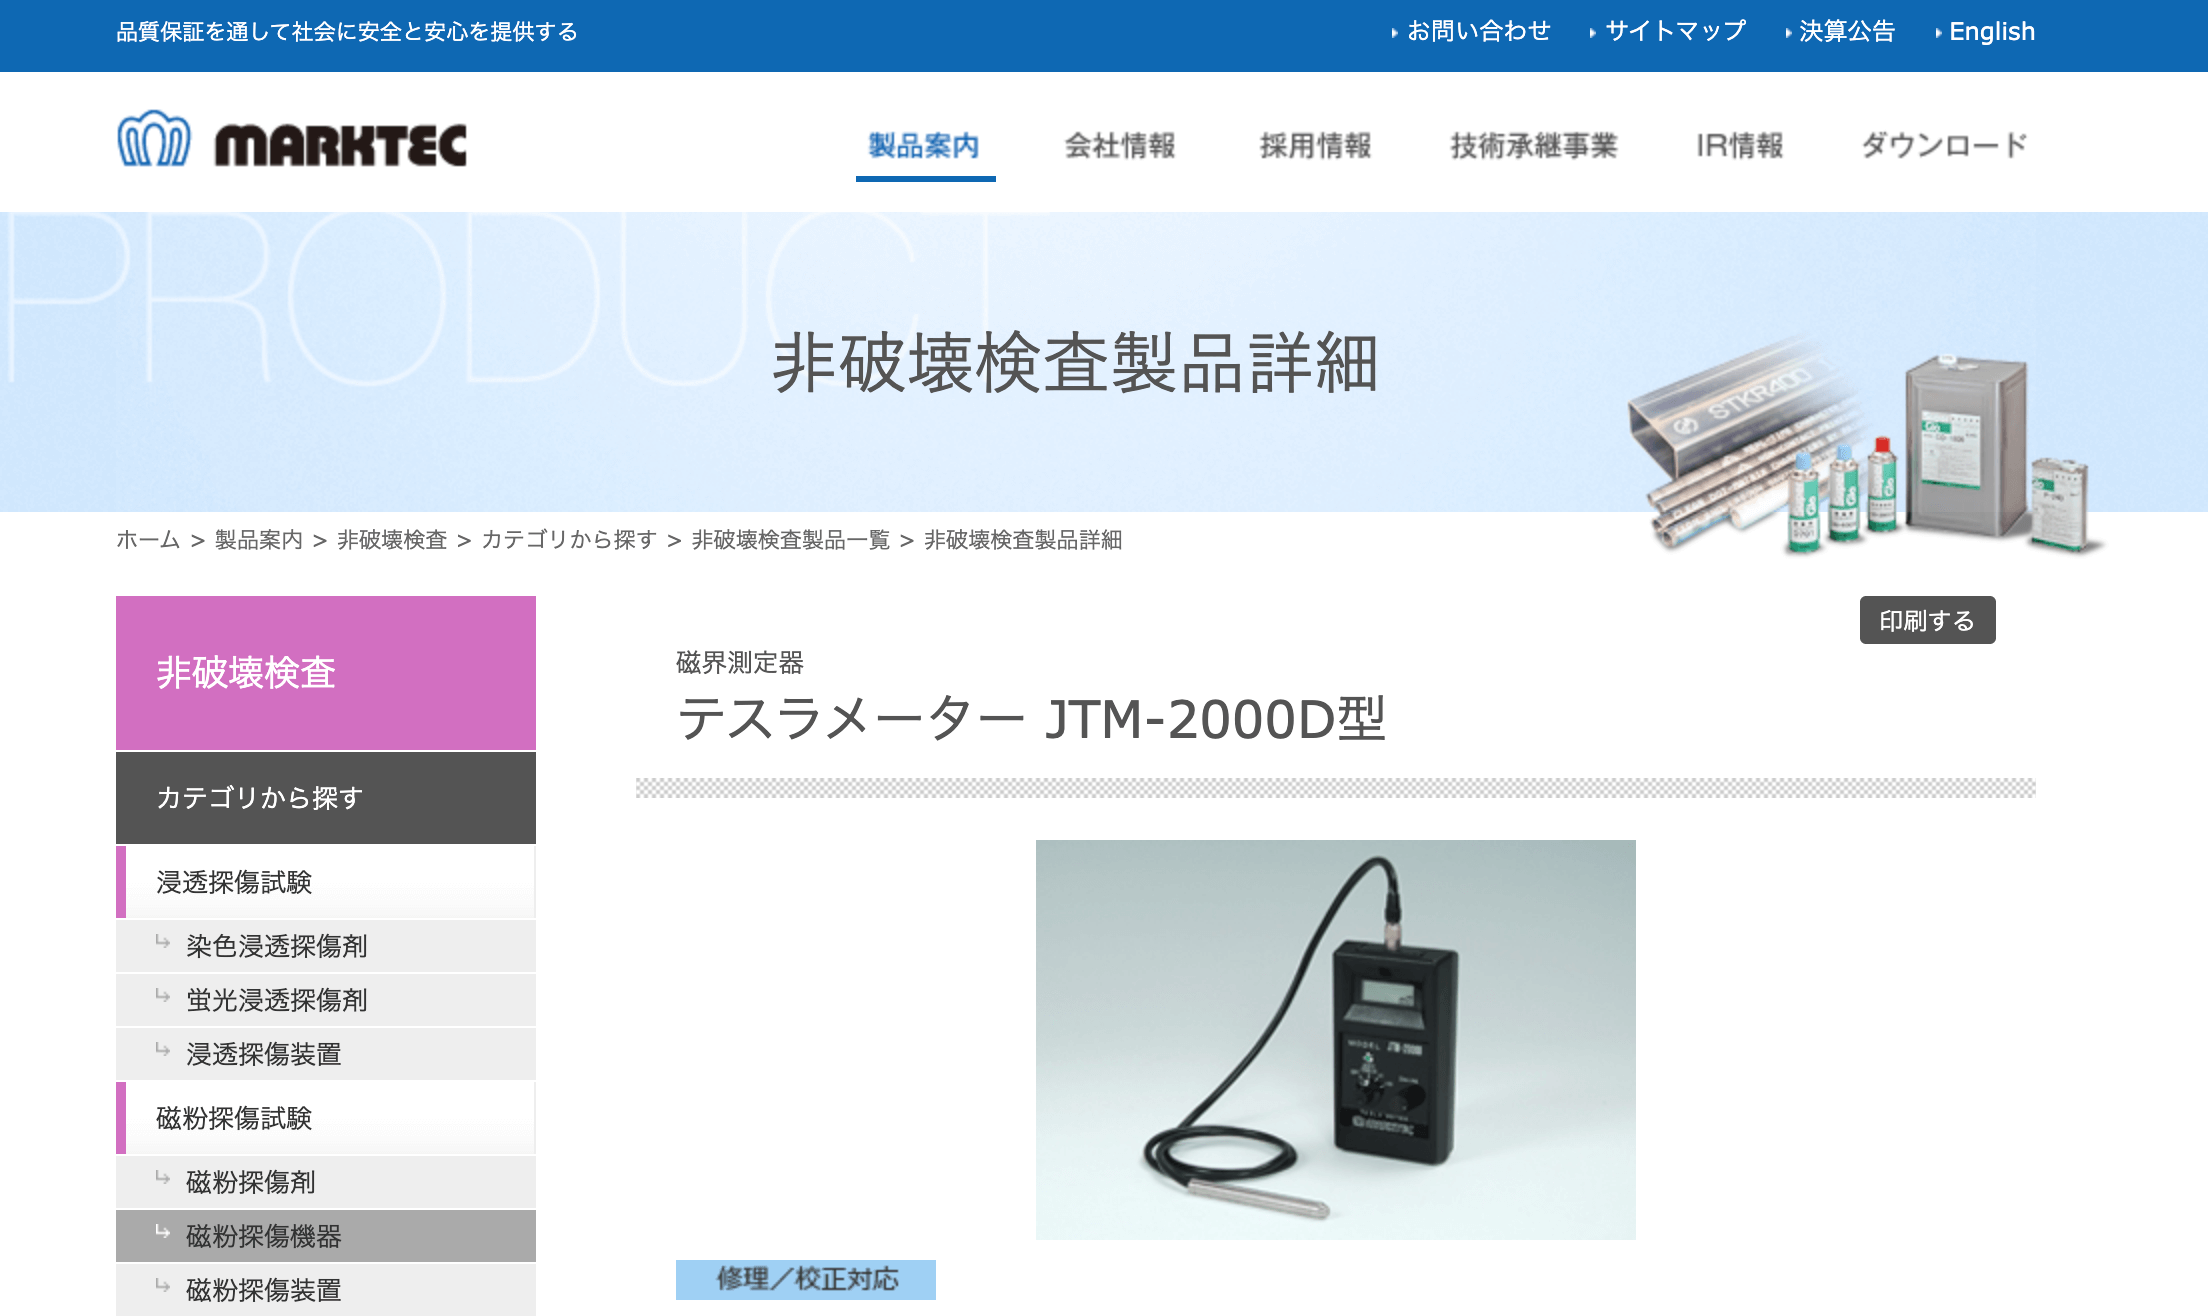 テスラメータ 日本電磁測器 磁気測定器 GV-400 - www.vetrepro.fr